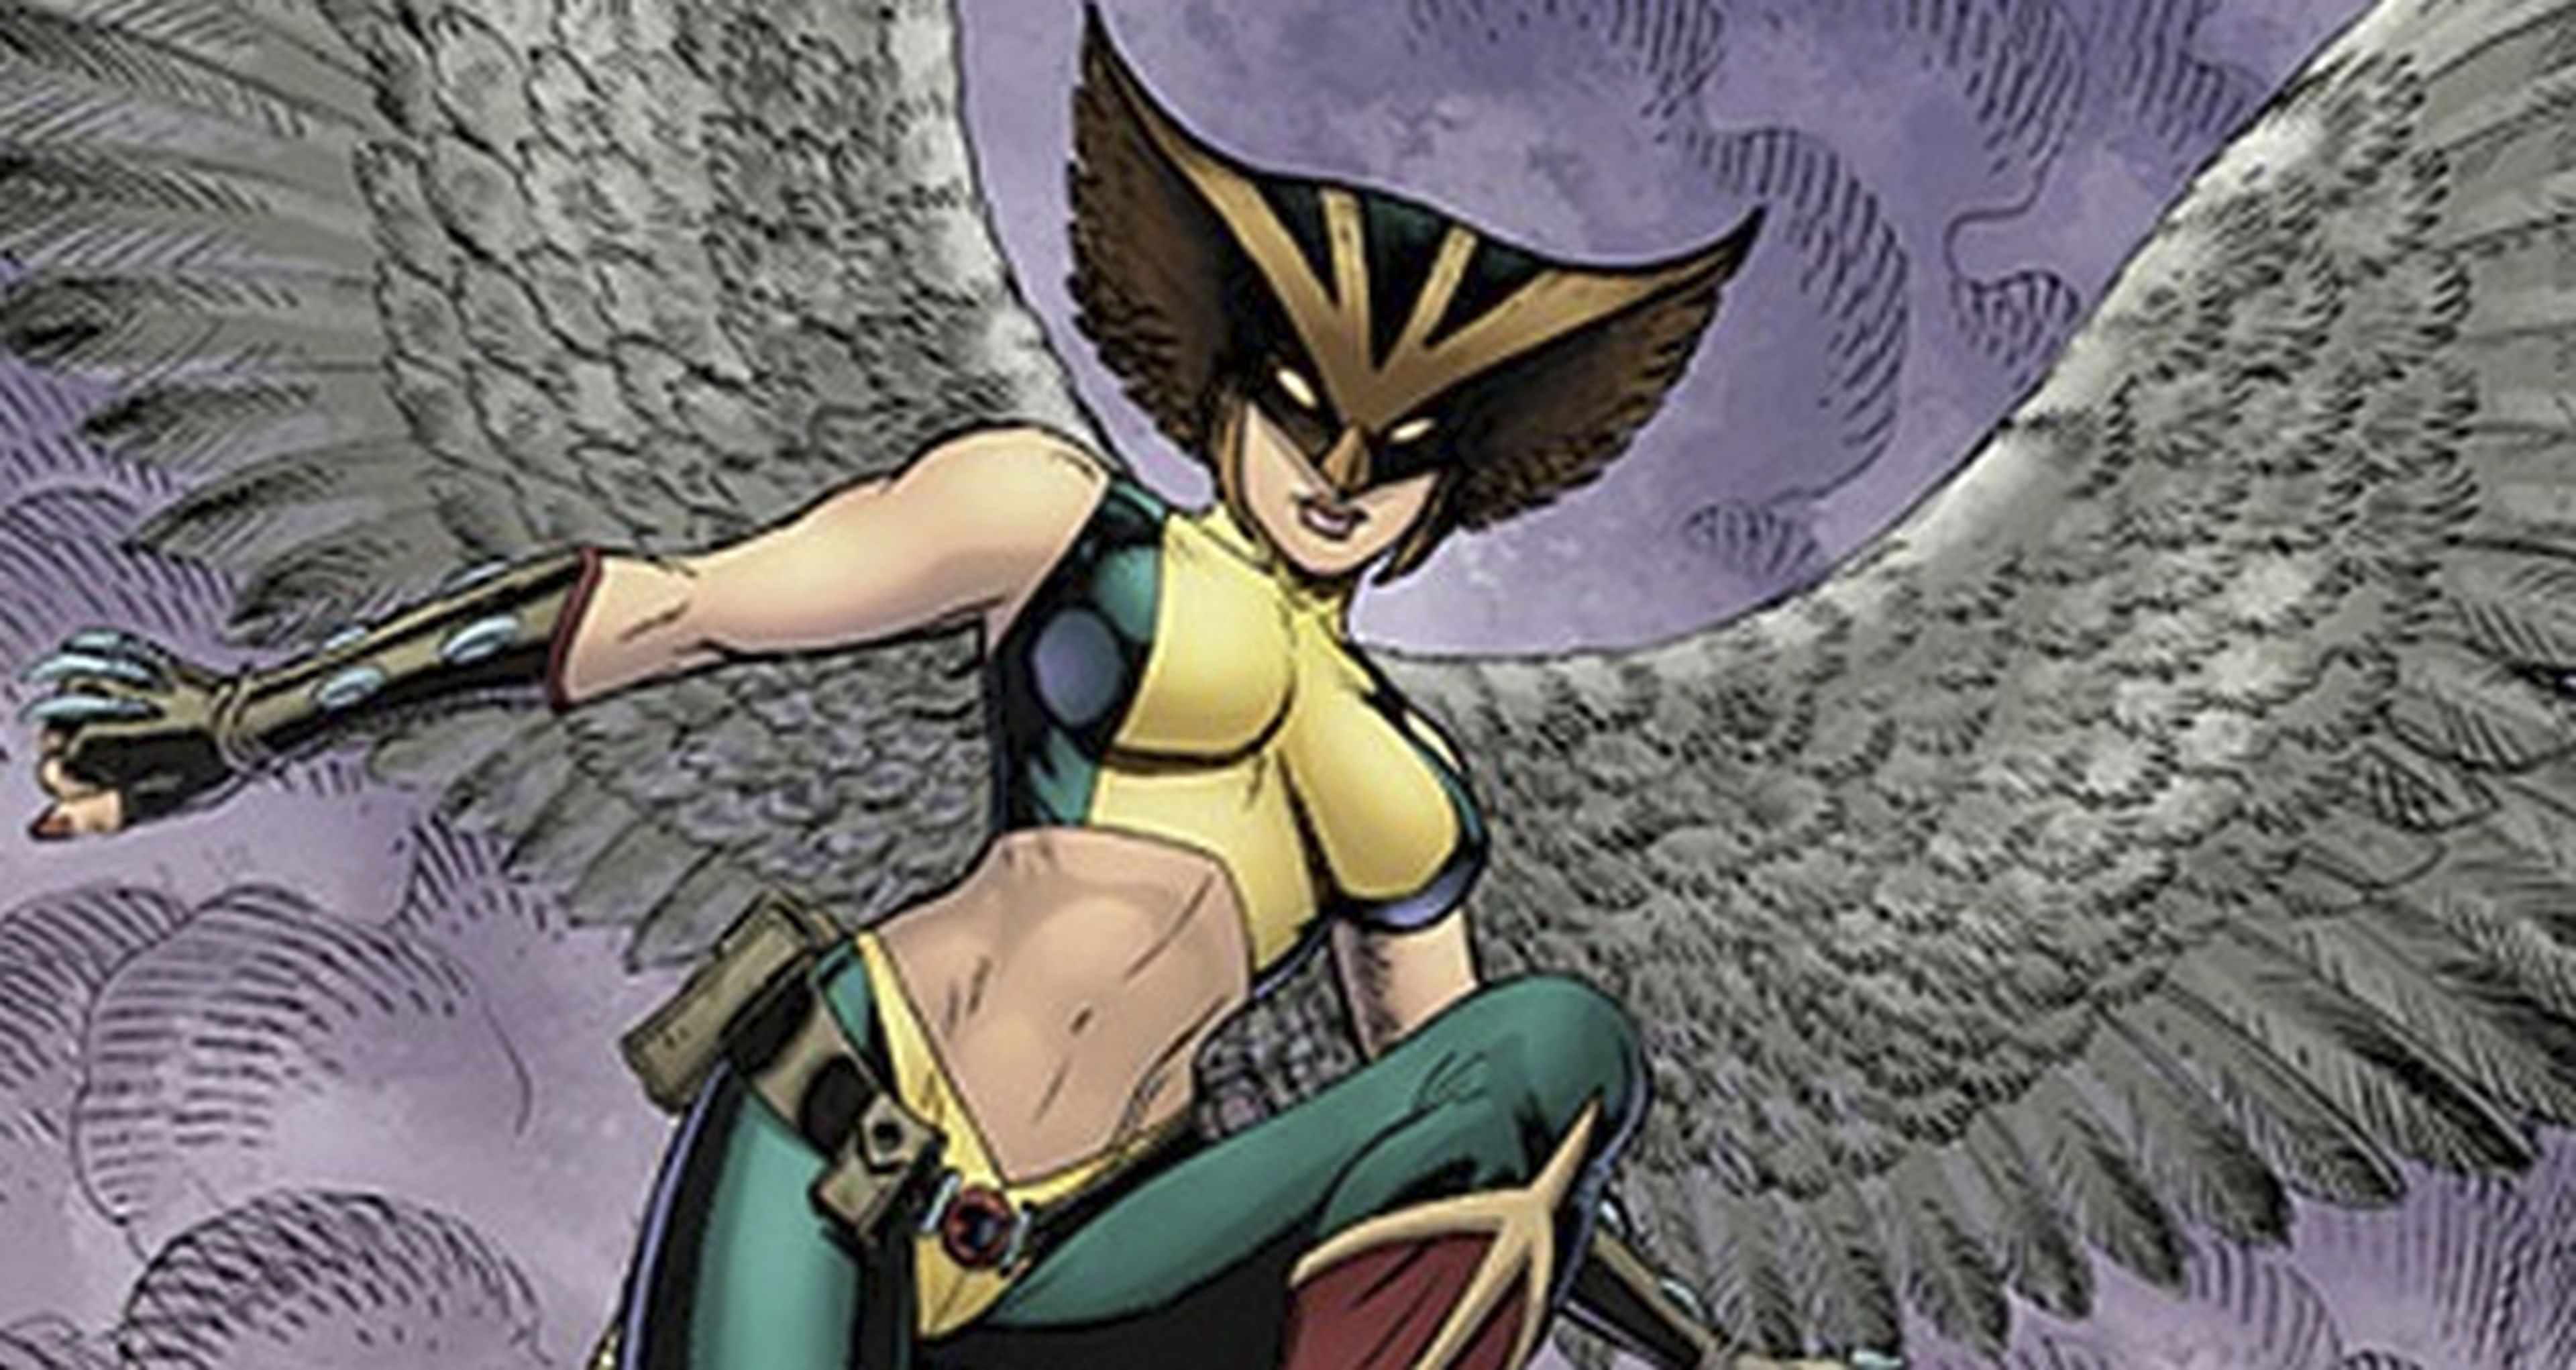 DC Cómics lanzará una serie centrada en Hawkgirl